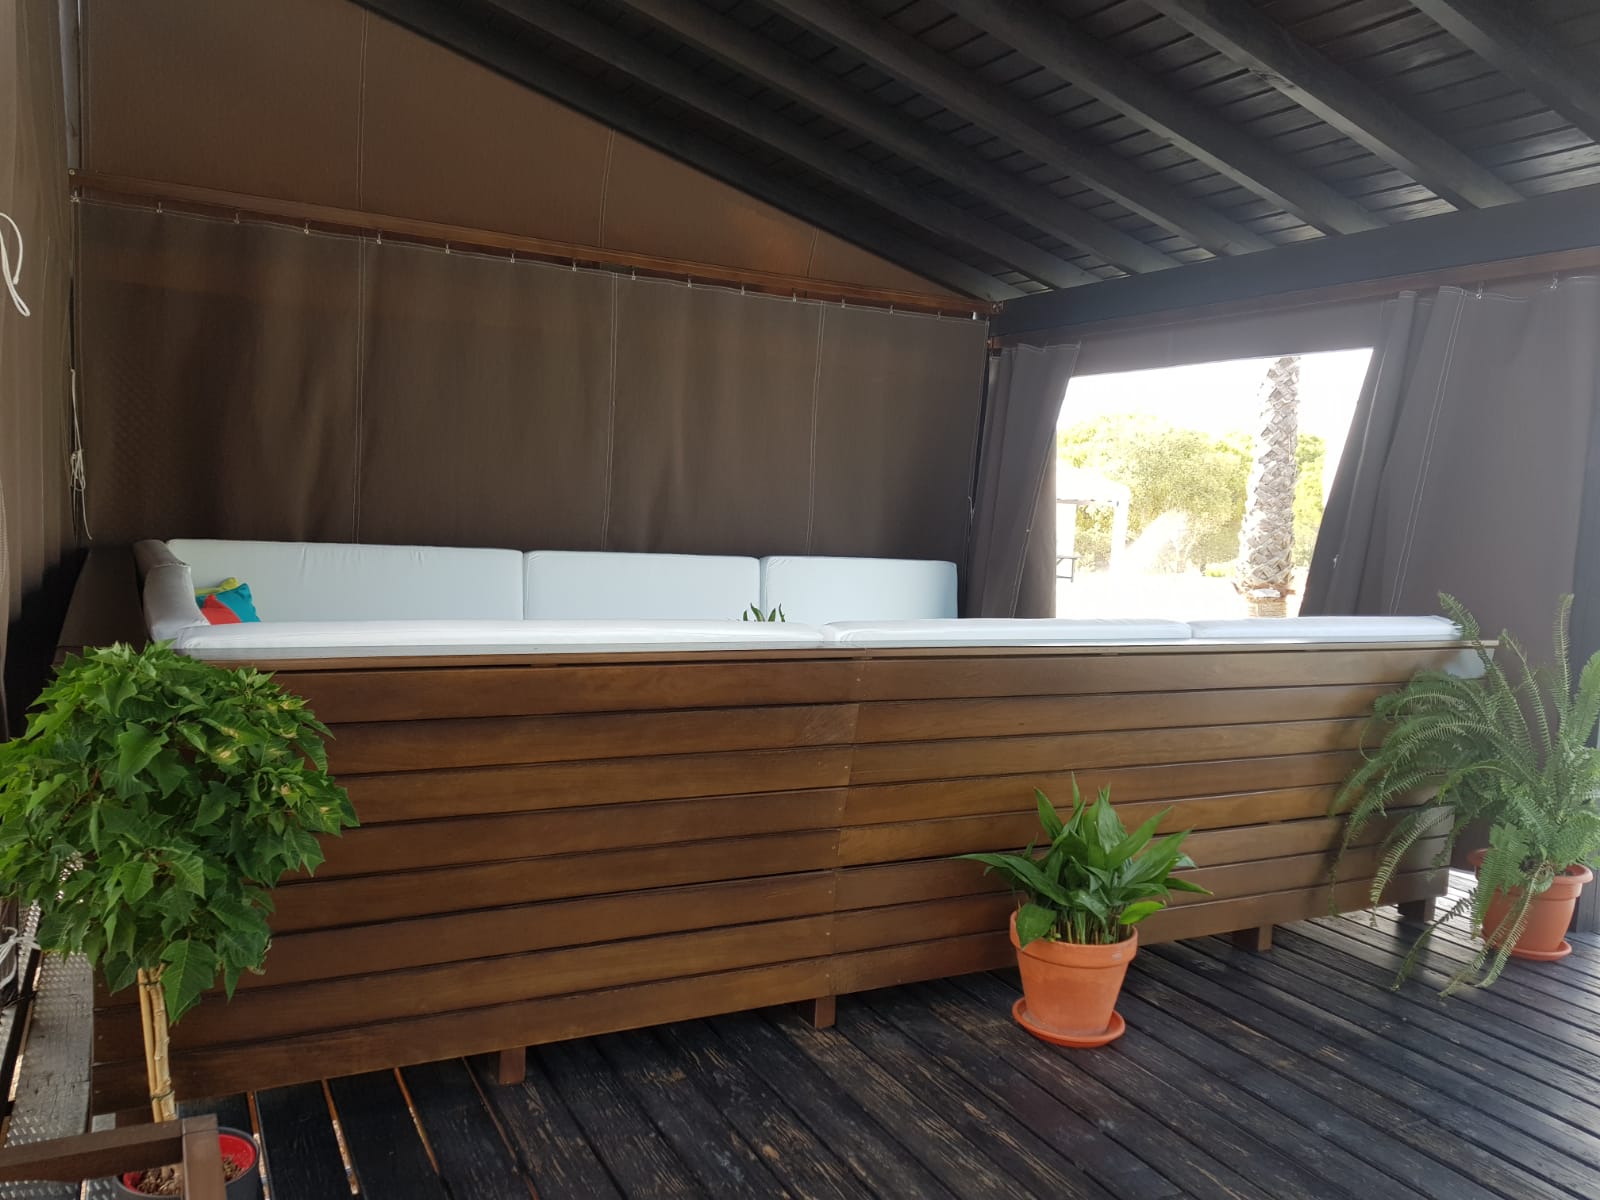 Mobiliario para exterior: bancos y mesas para zona de piscina